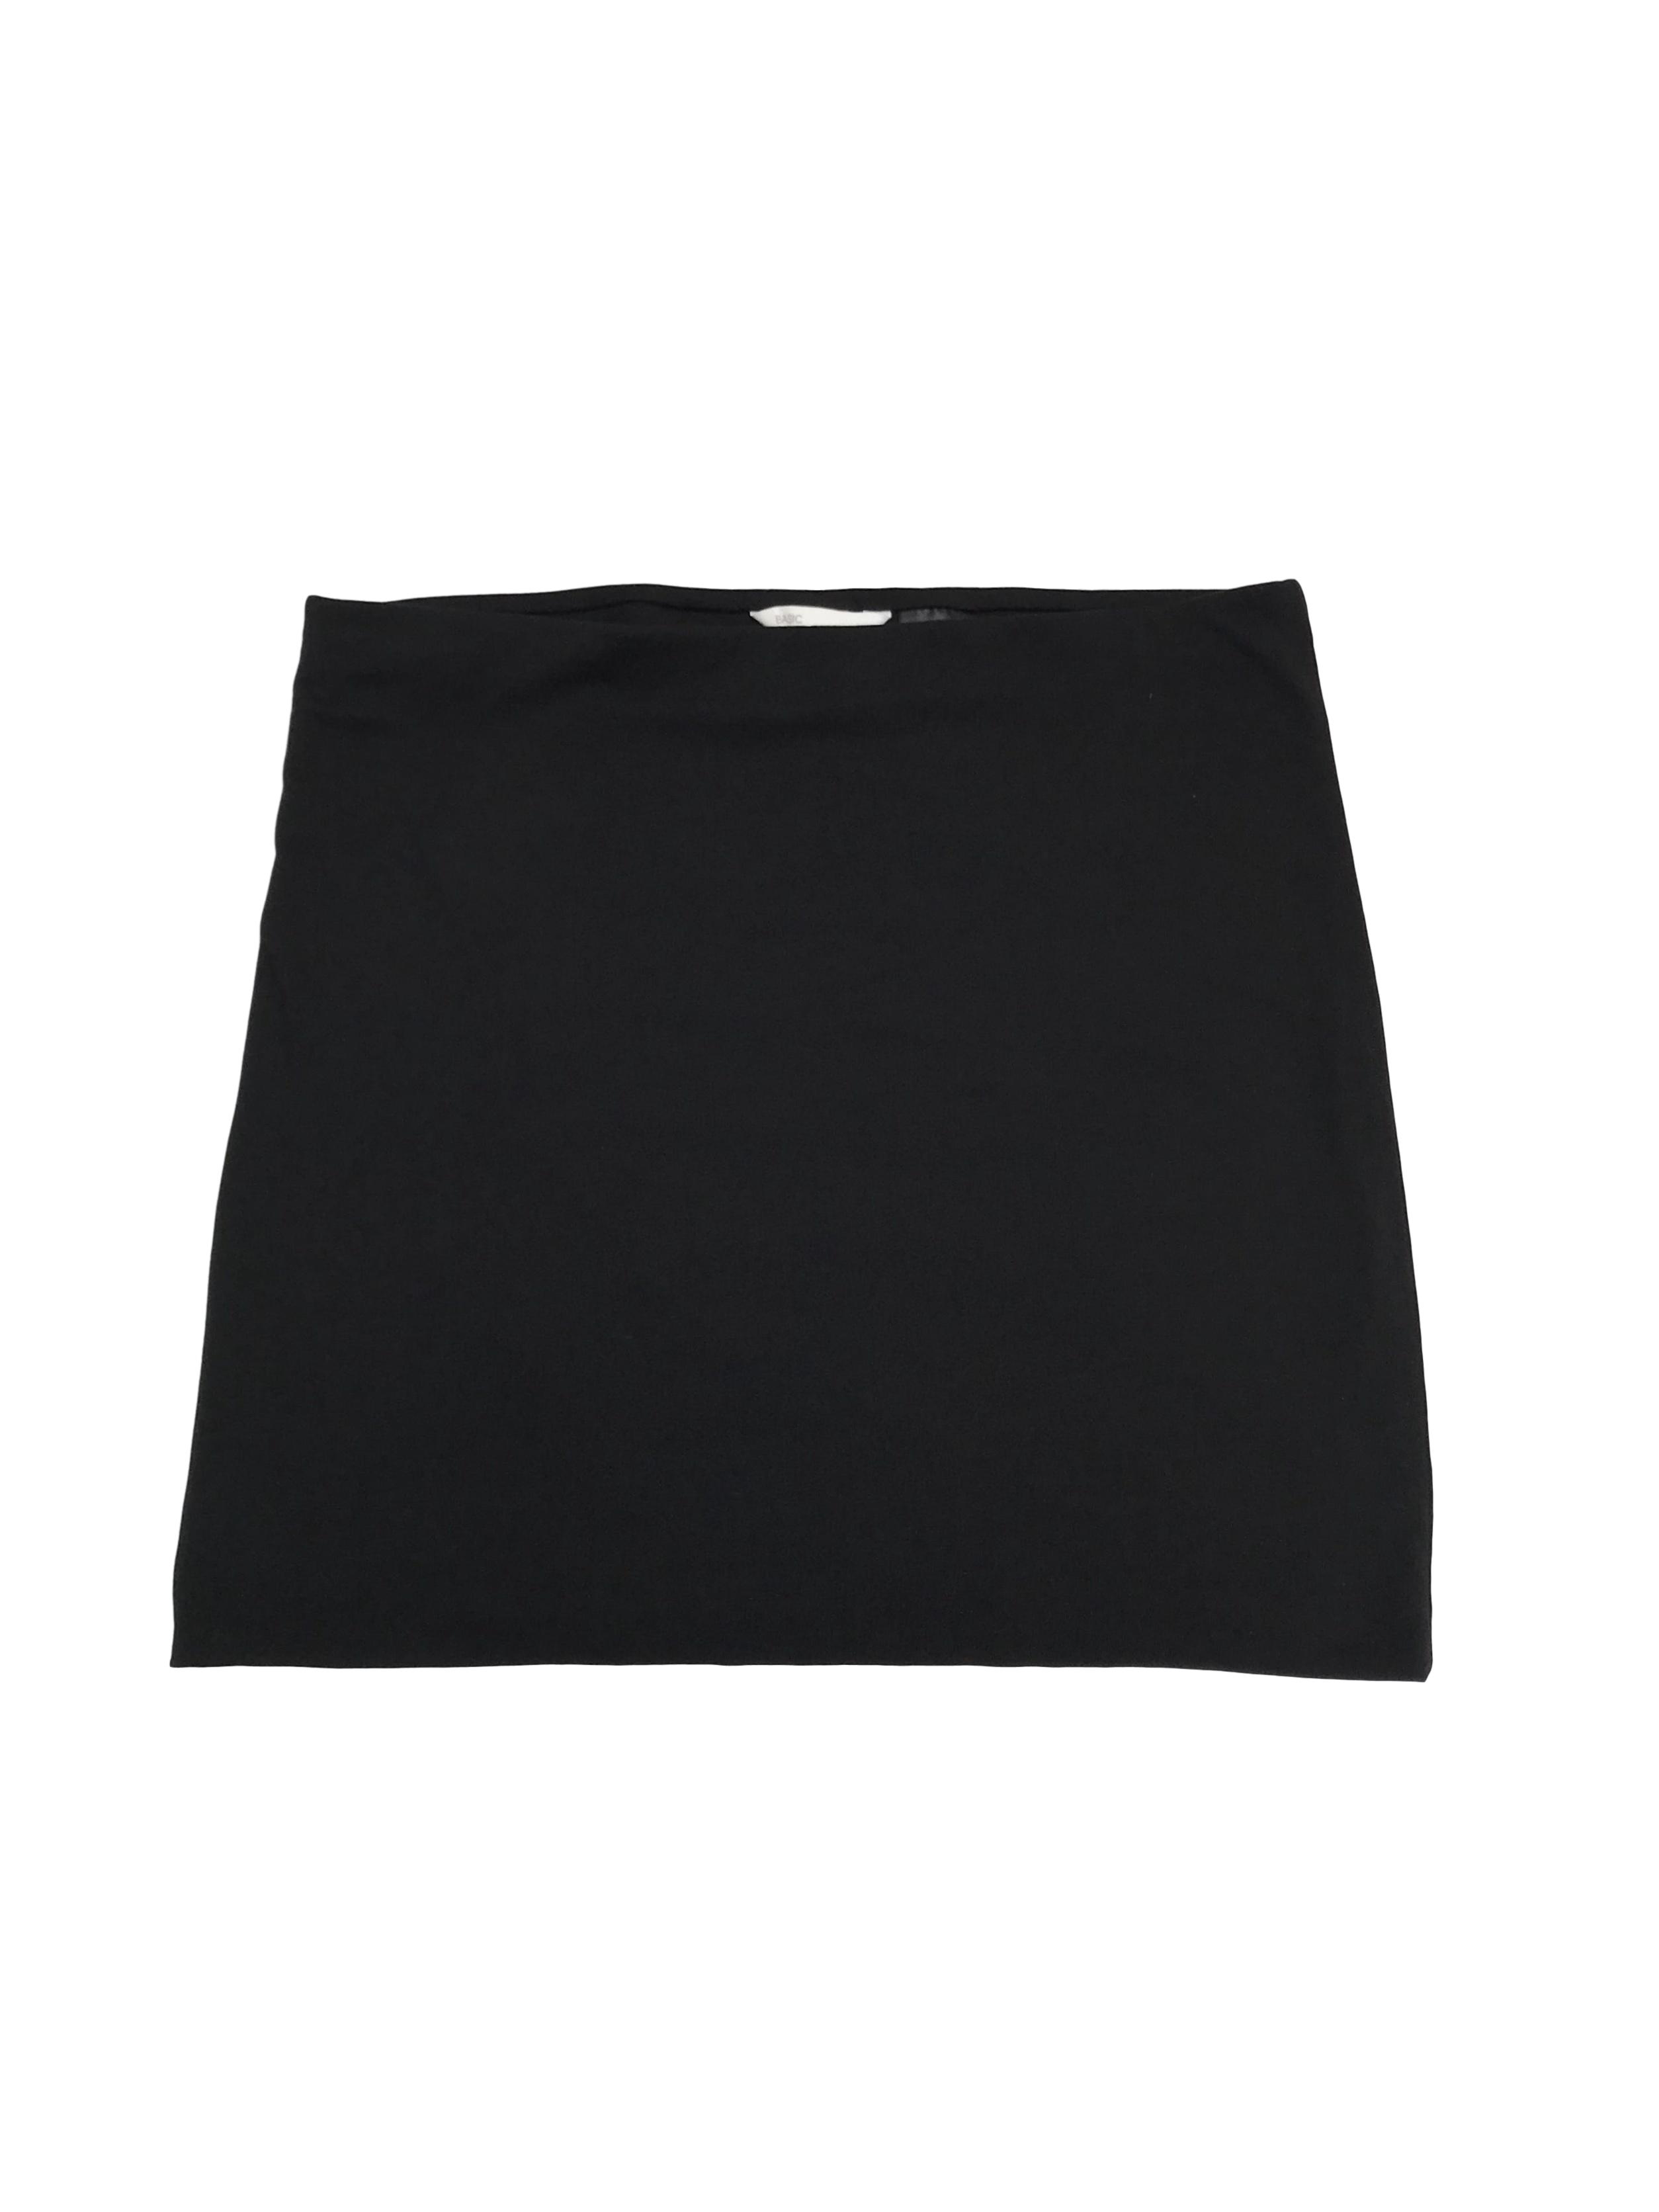 Falda H&M negra de dos capas de algodón ligeramente stretch y elástico en la cintura. Largo 40cm. ¡Básica en todo closet!